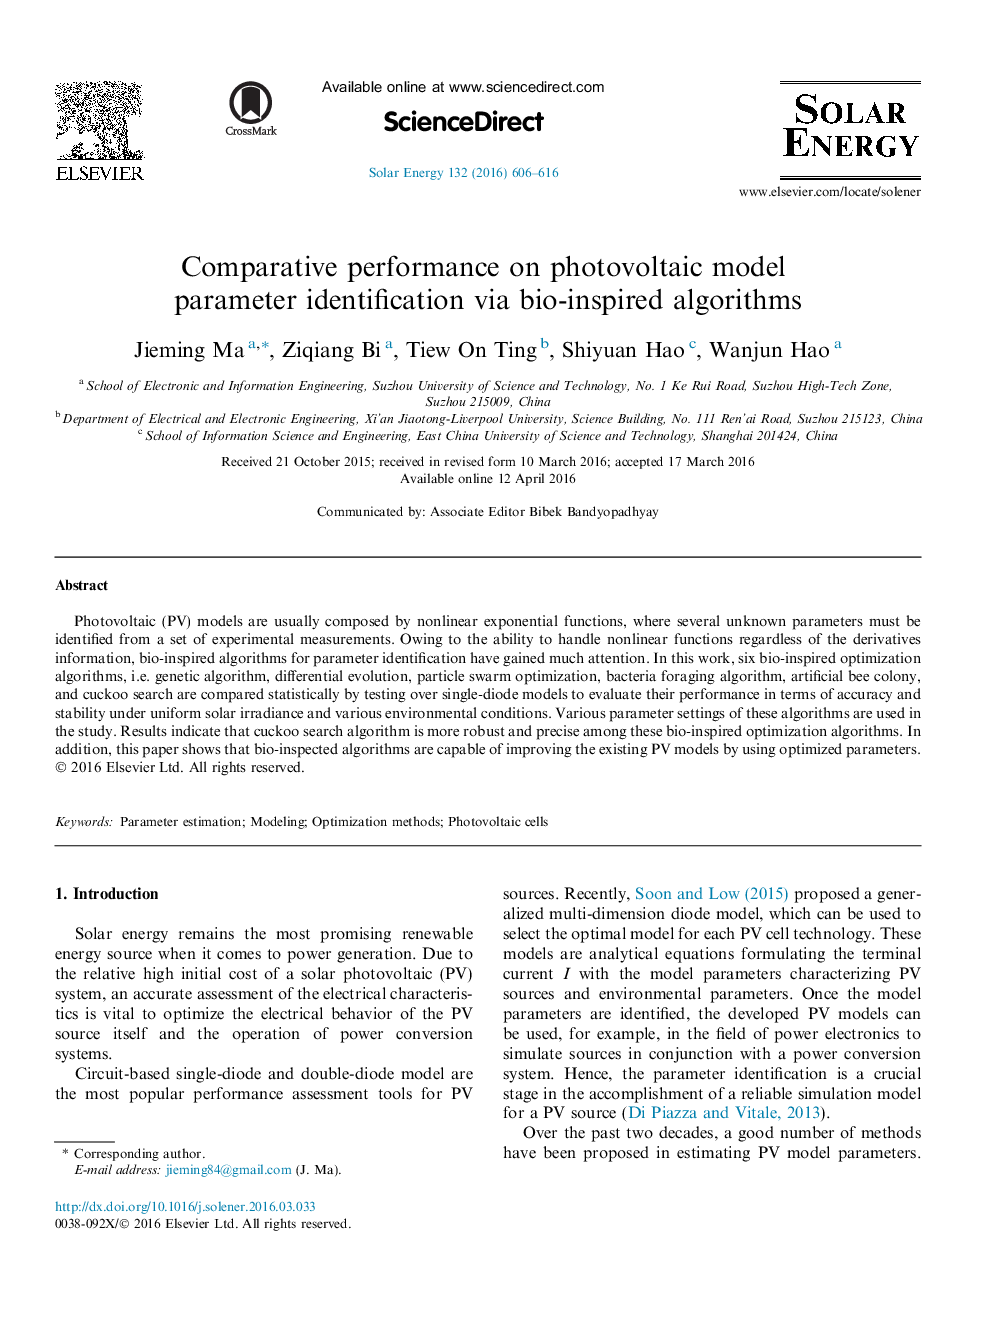 عملکرد مقایسه ای در شناسایی پارامترهای مدل فتوولتائیک از طریق الگوریتم های الهام گرفته از زیست شناسی 